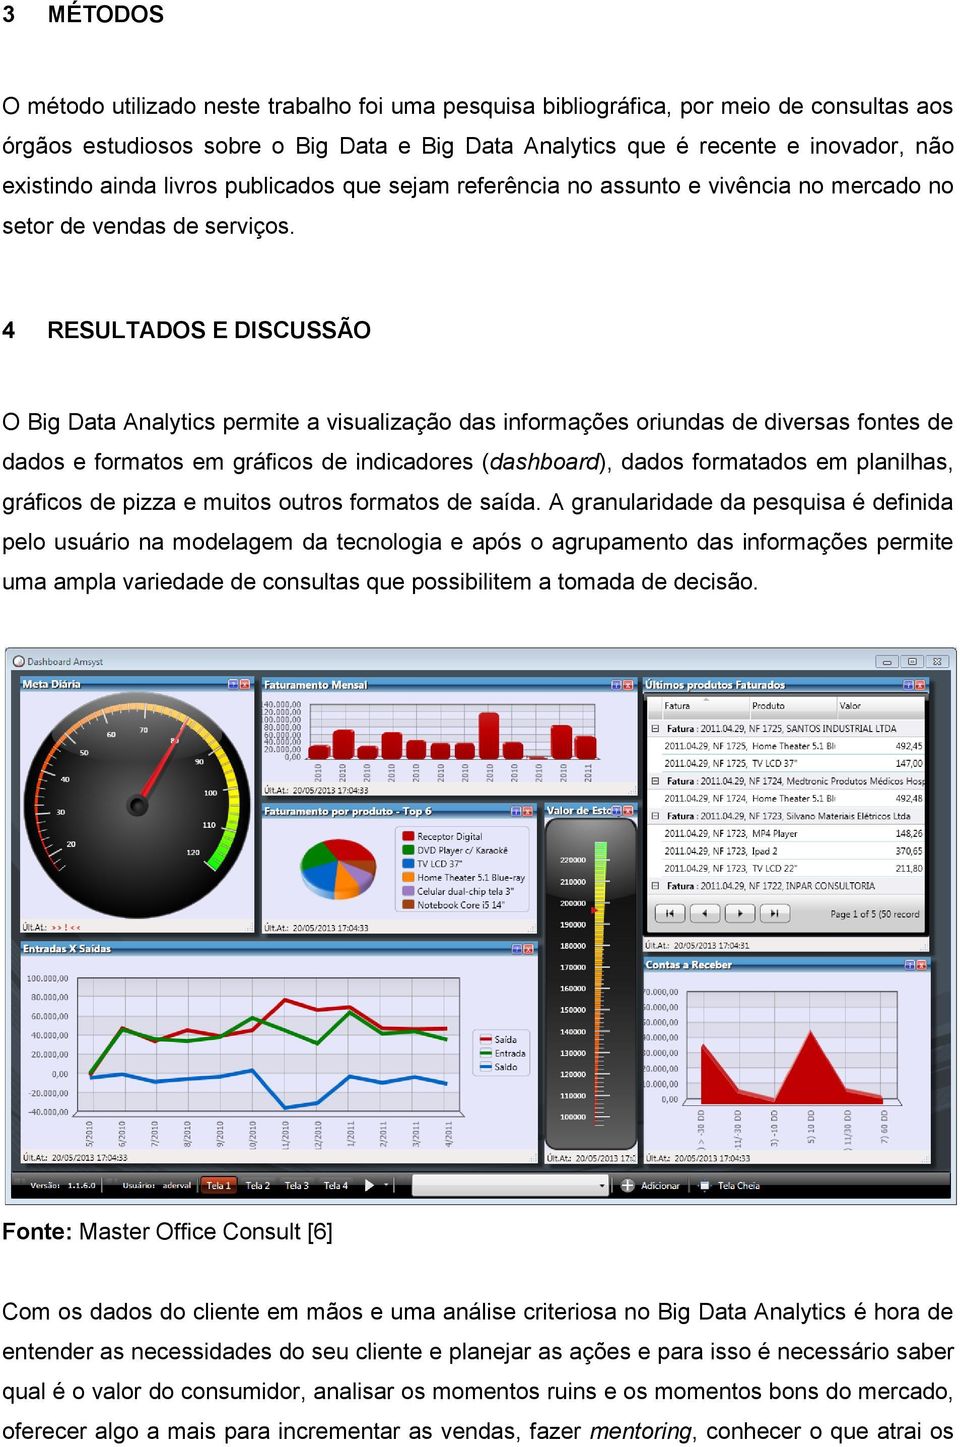 4 RESULTADOS E DISCUSSÃO O Big Data Analytics permite a visualização das informações oriundas de diversas fontes de dados e formatos em gráficos de indicadores (dashboard), dados formatados em